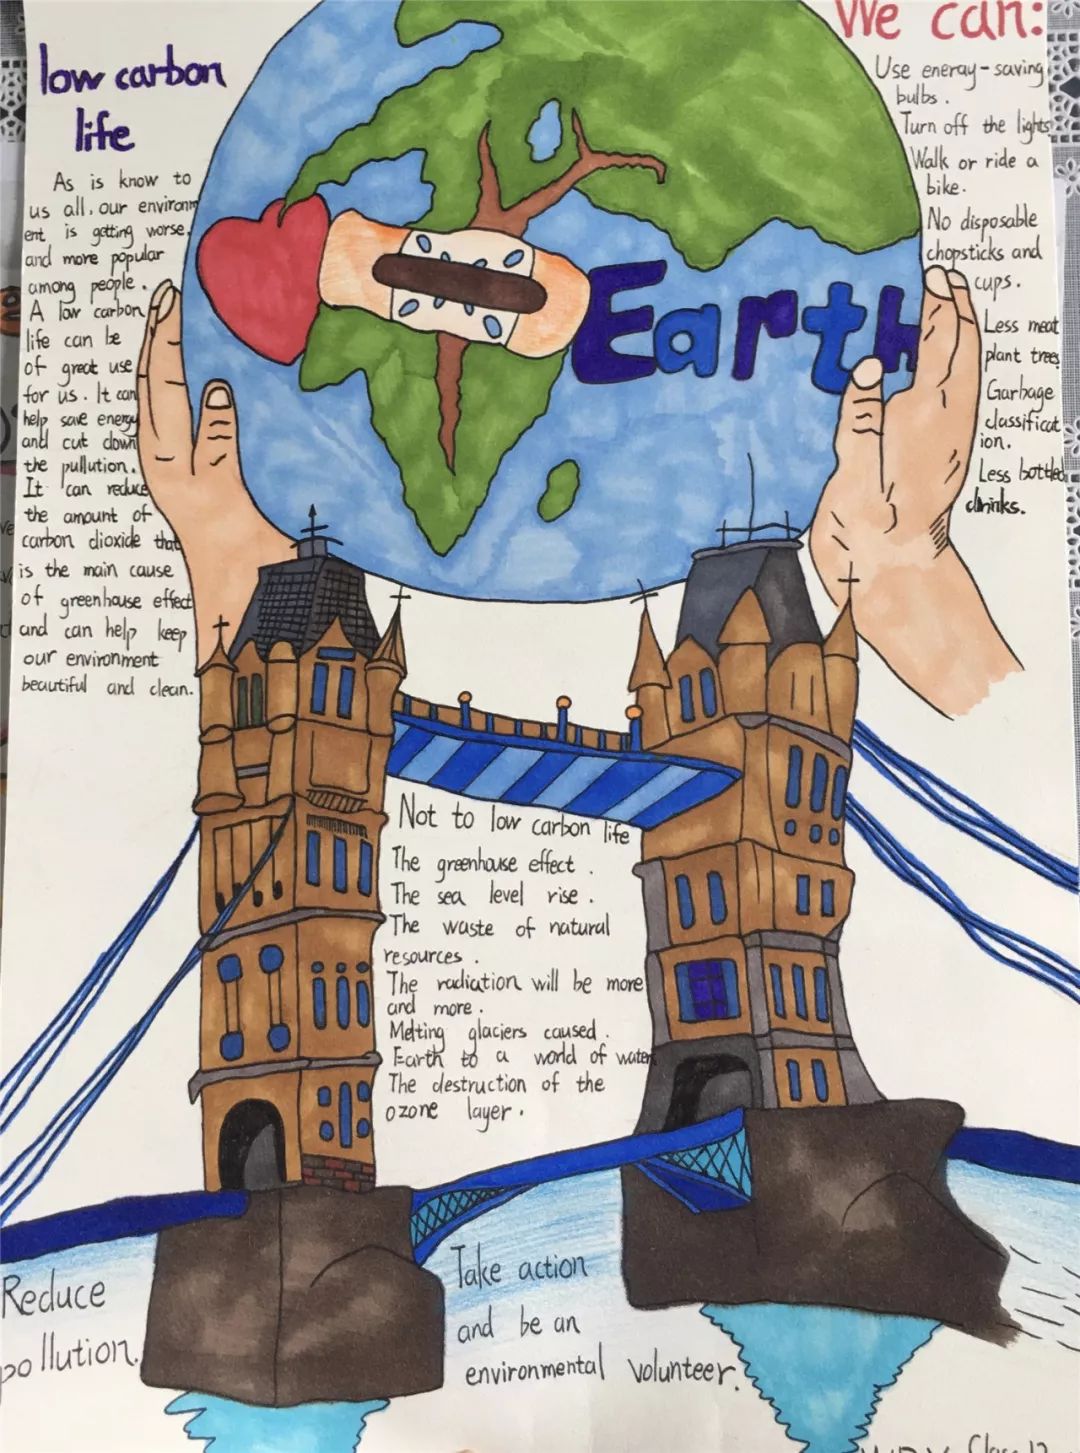 幸福小浪花善待地球妈妈守护绿色家园2019年英语环保海报制作比赛